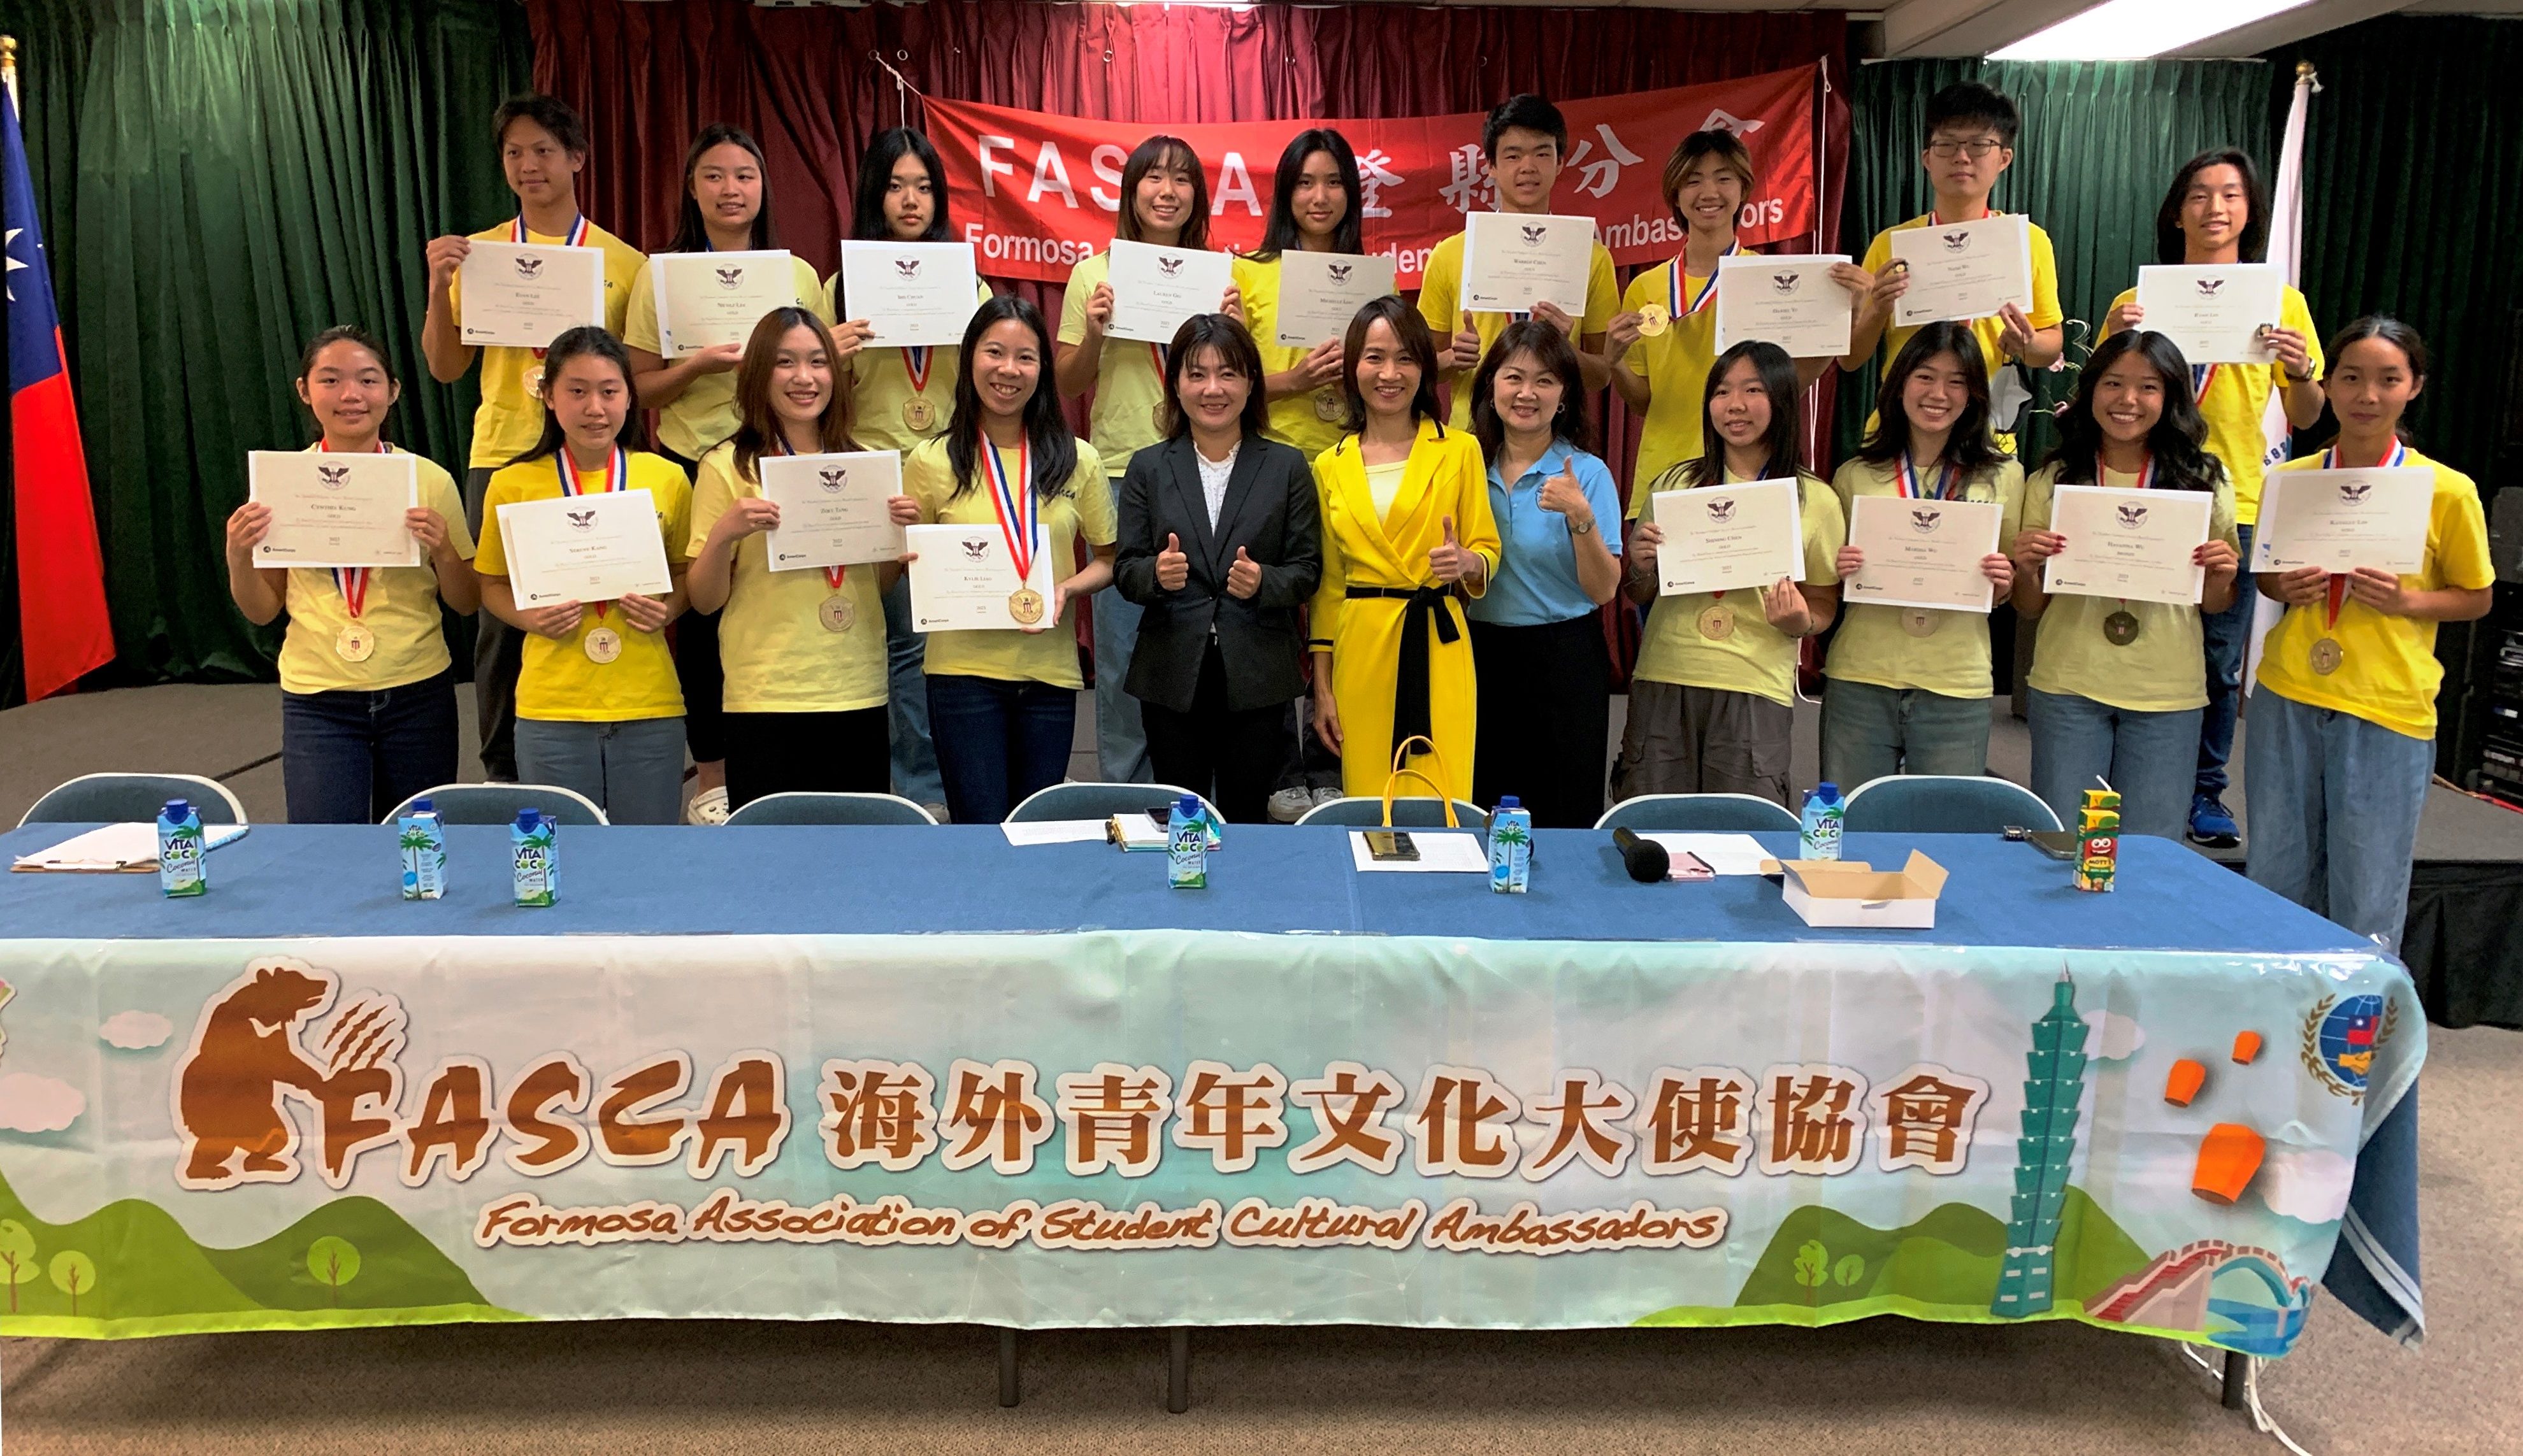 橙县FASCA颁“美国总统志工奖”　20青年获奖